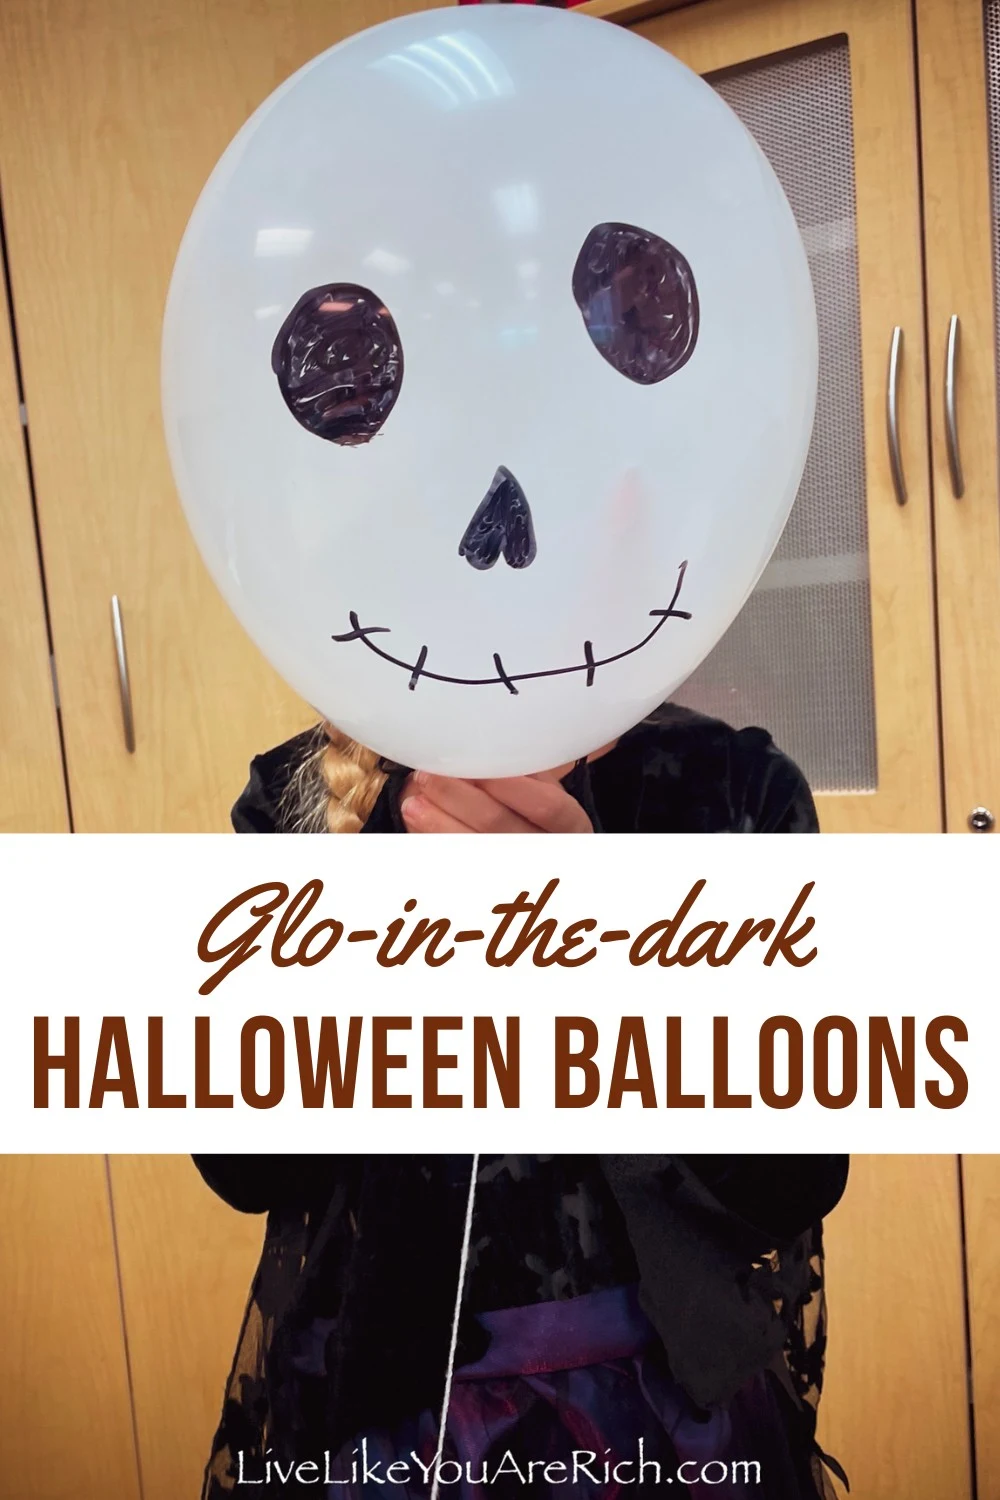 Glo-in-the-dark Halloween Balloons